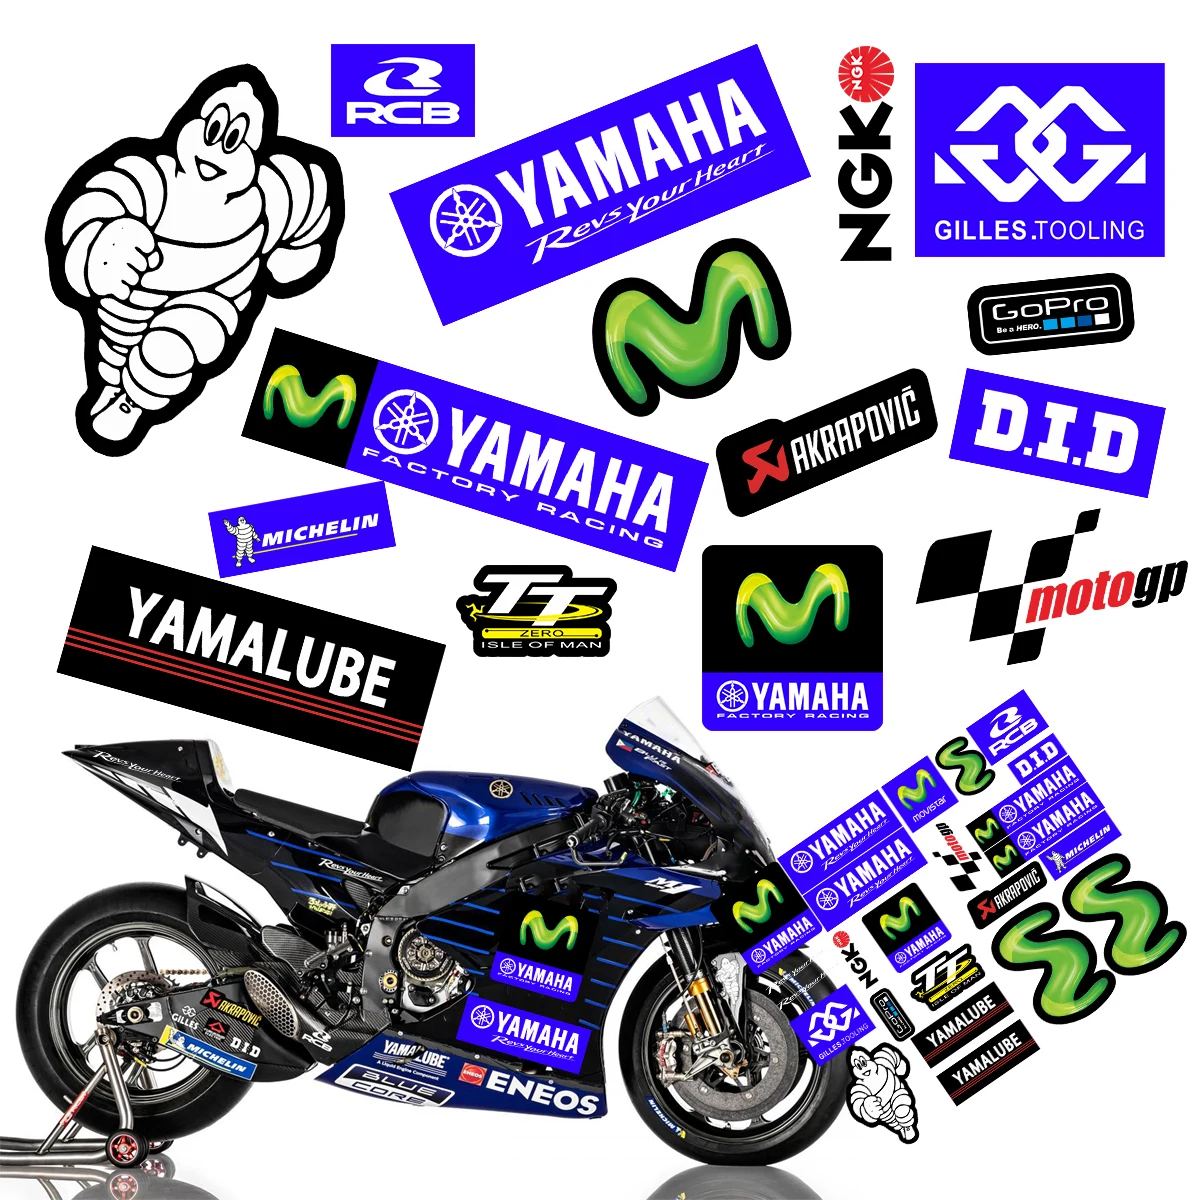 STATUZ Vinyl Reflektierend Für Yamaha Aufkleber Motorrad Logo